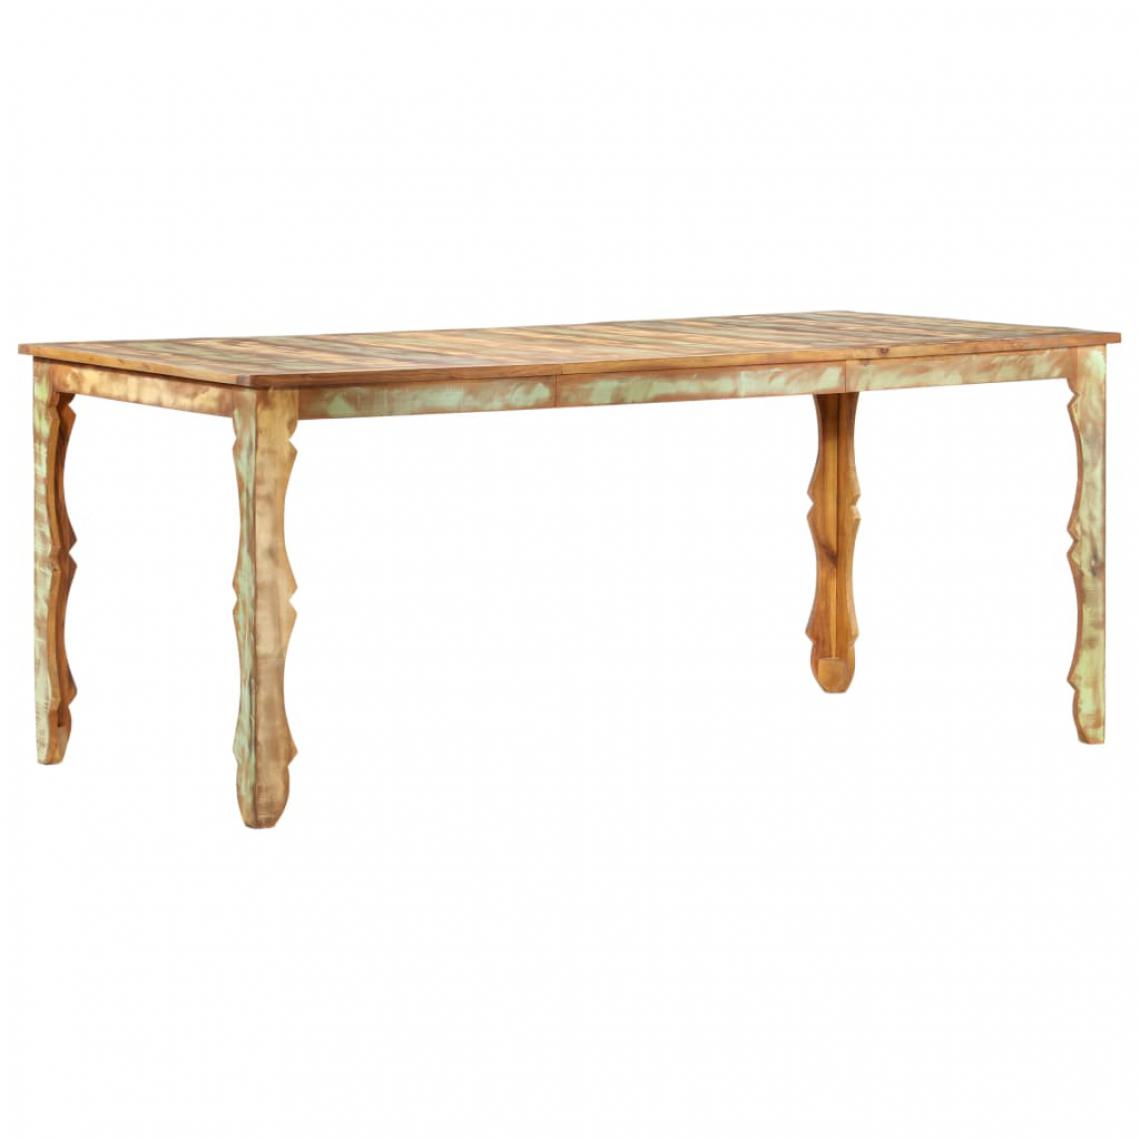 Icaverne - Splendide Tables serie Niamey Table de salle à manger 180x90x76cm Bois de récupération solide - Tables à manger